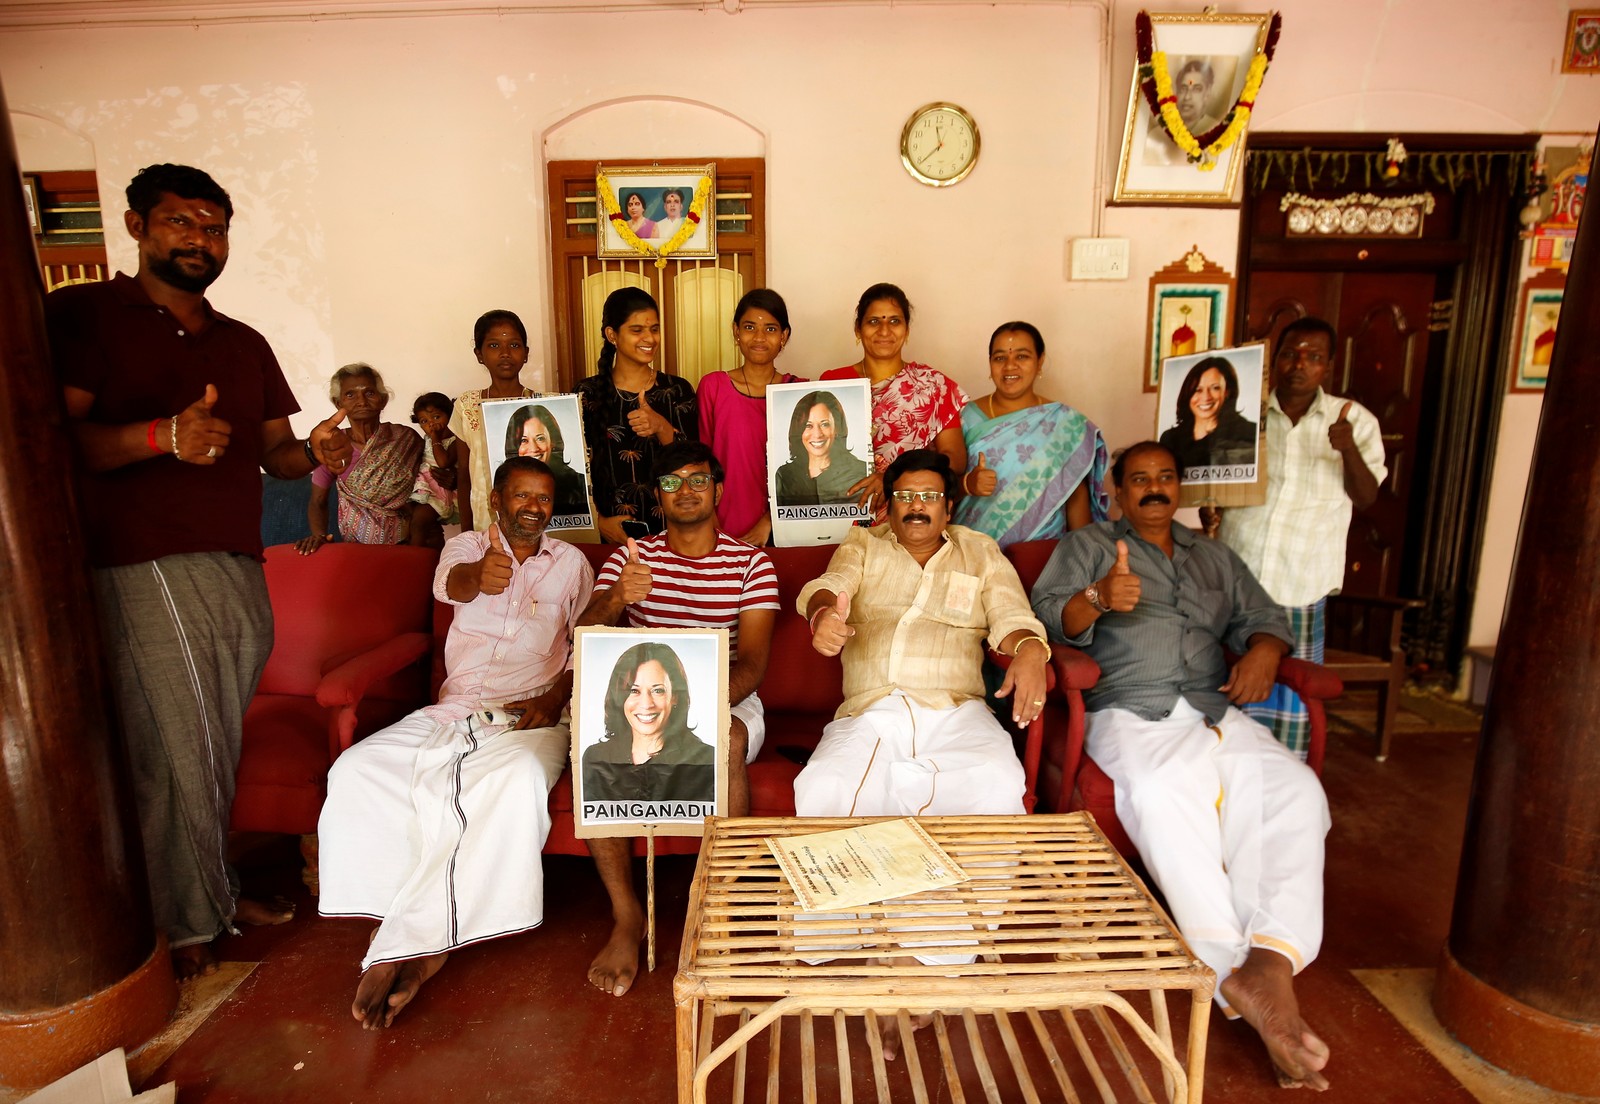 Uma família indiana posa para uma fotografia enquanto torce pela vitória de Kamala Harris, em Painganadu, perto da vila de Thulasendrapuram, onde o avô materno de Harris nasceu e cresceu, no estado de Tamil Nadu, no sul da ÍndiaREUTERS